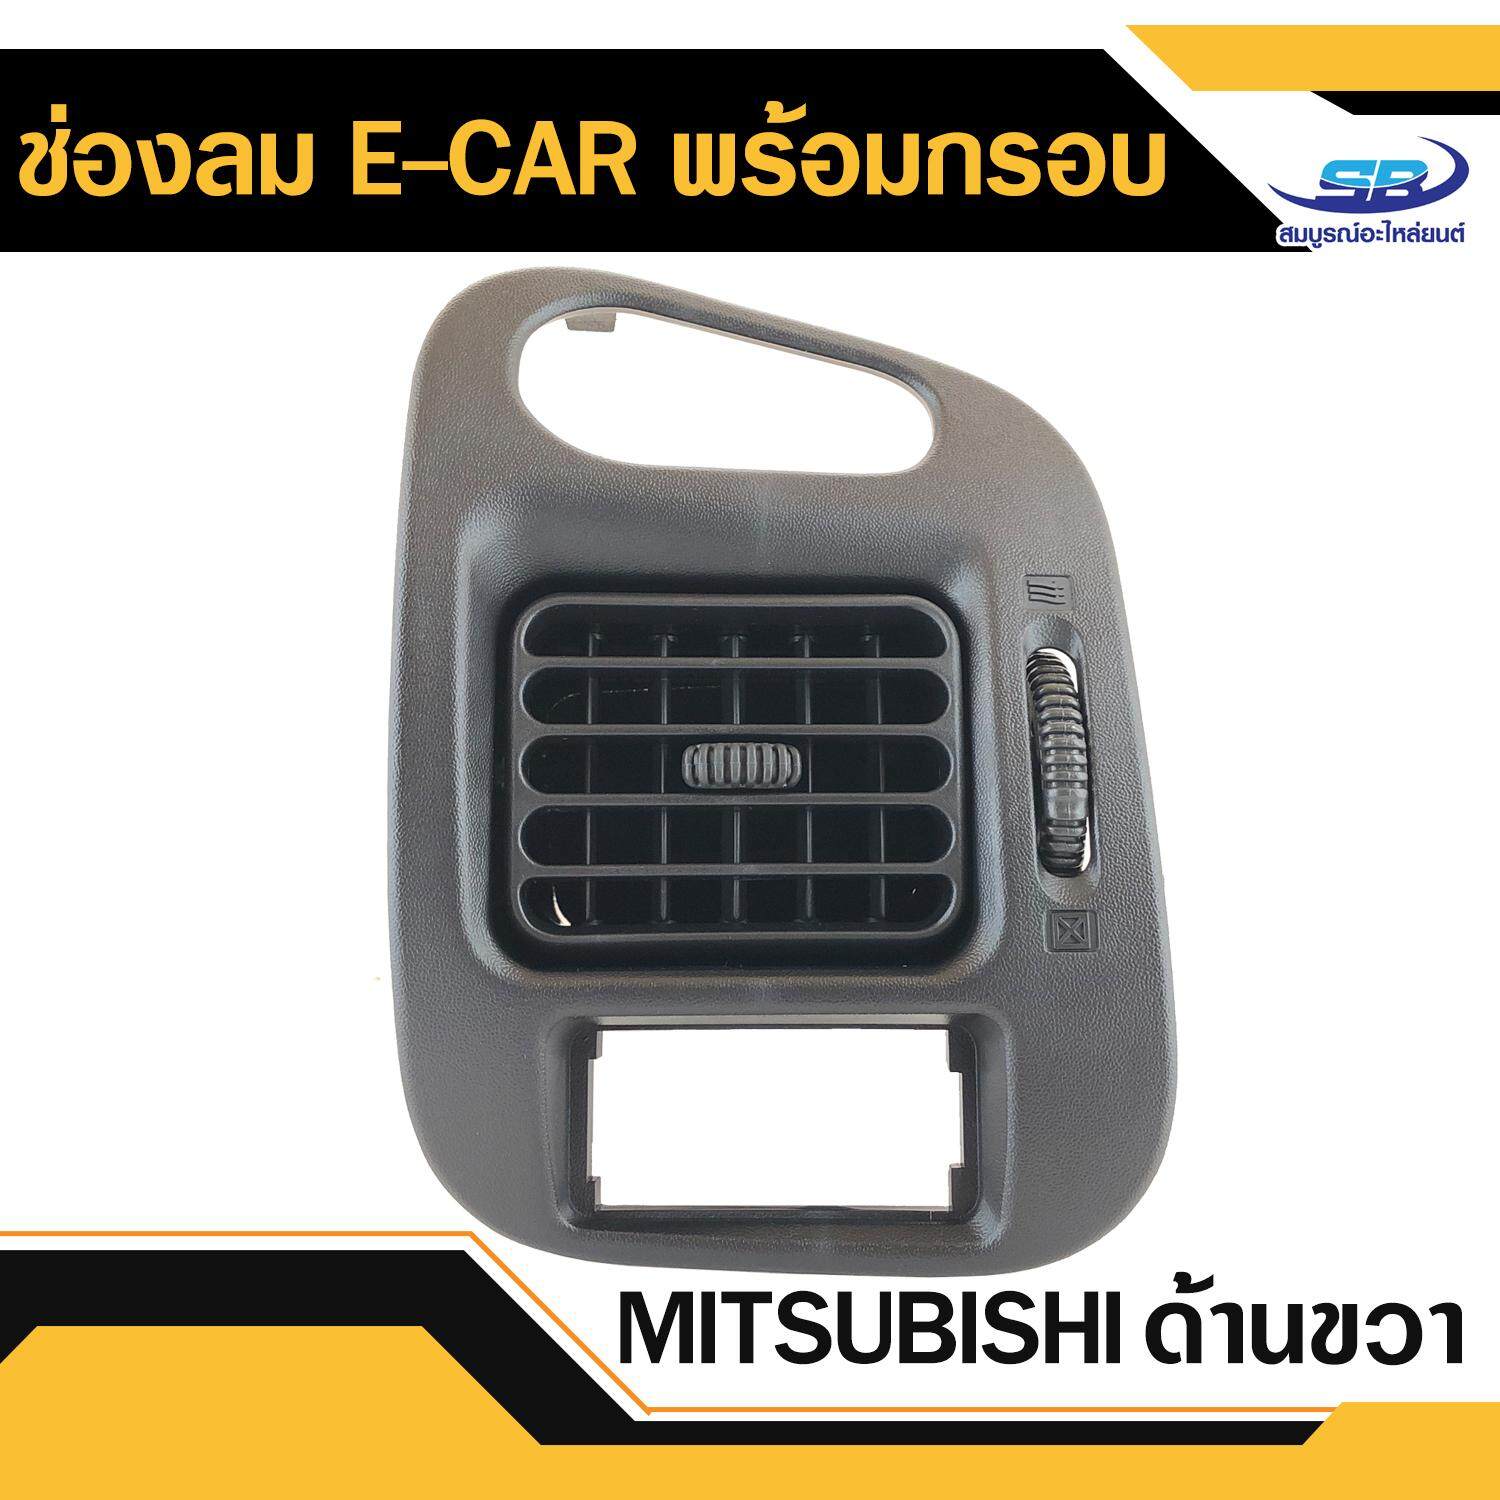 ช่องลมแอร์พร้อมกรอบ ด้านขวา Mitsubishi e-car มิตซูบิชิ อีคาร์ แท้